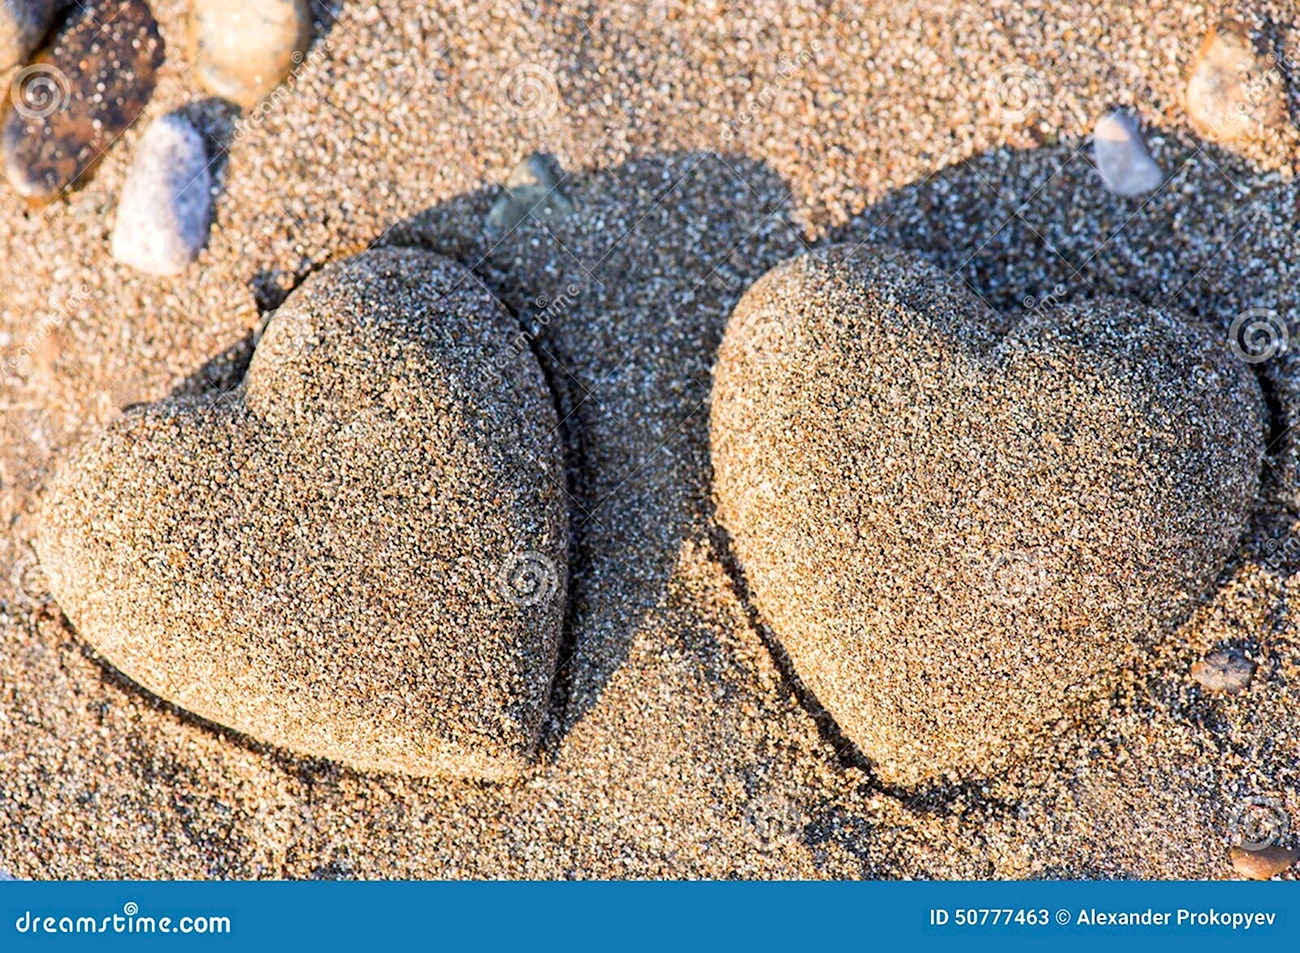 Сердце из песка. Красивая картинка